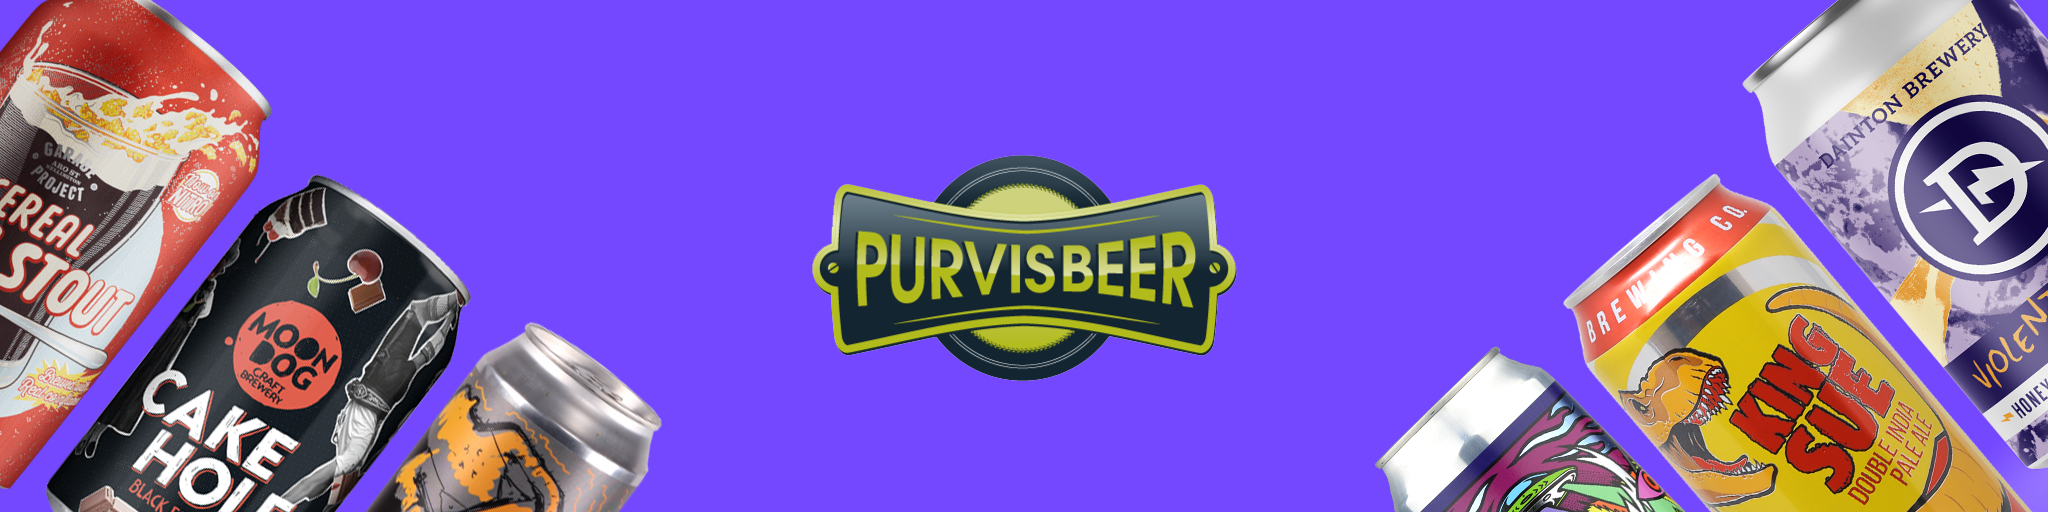 Purvis Beer VR